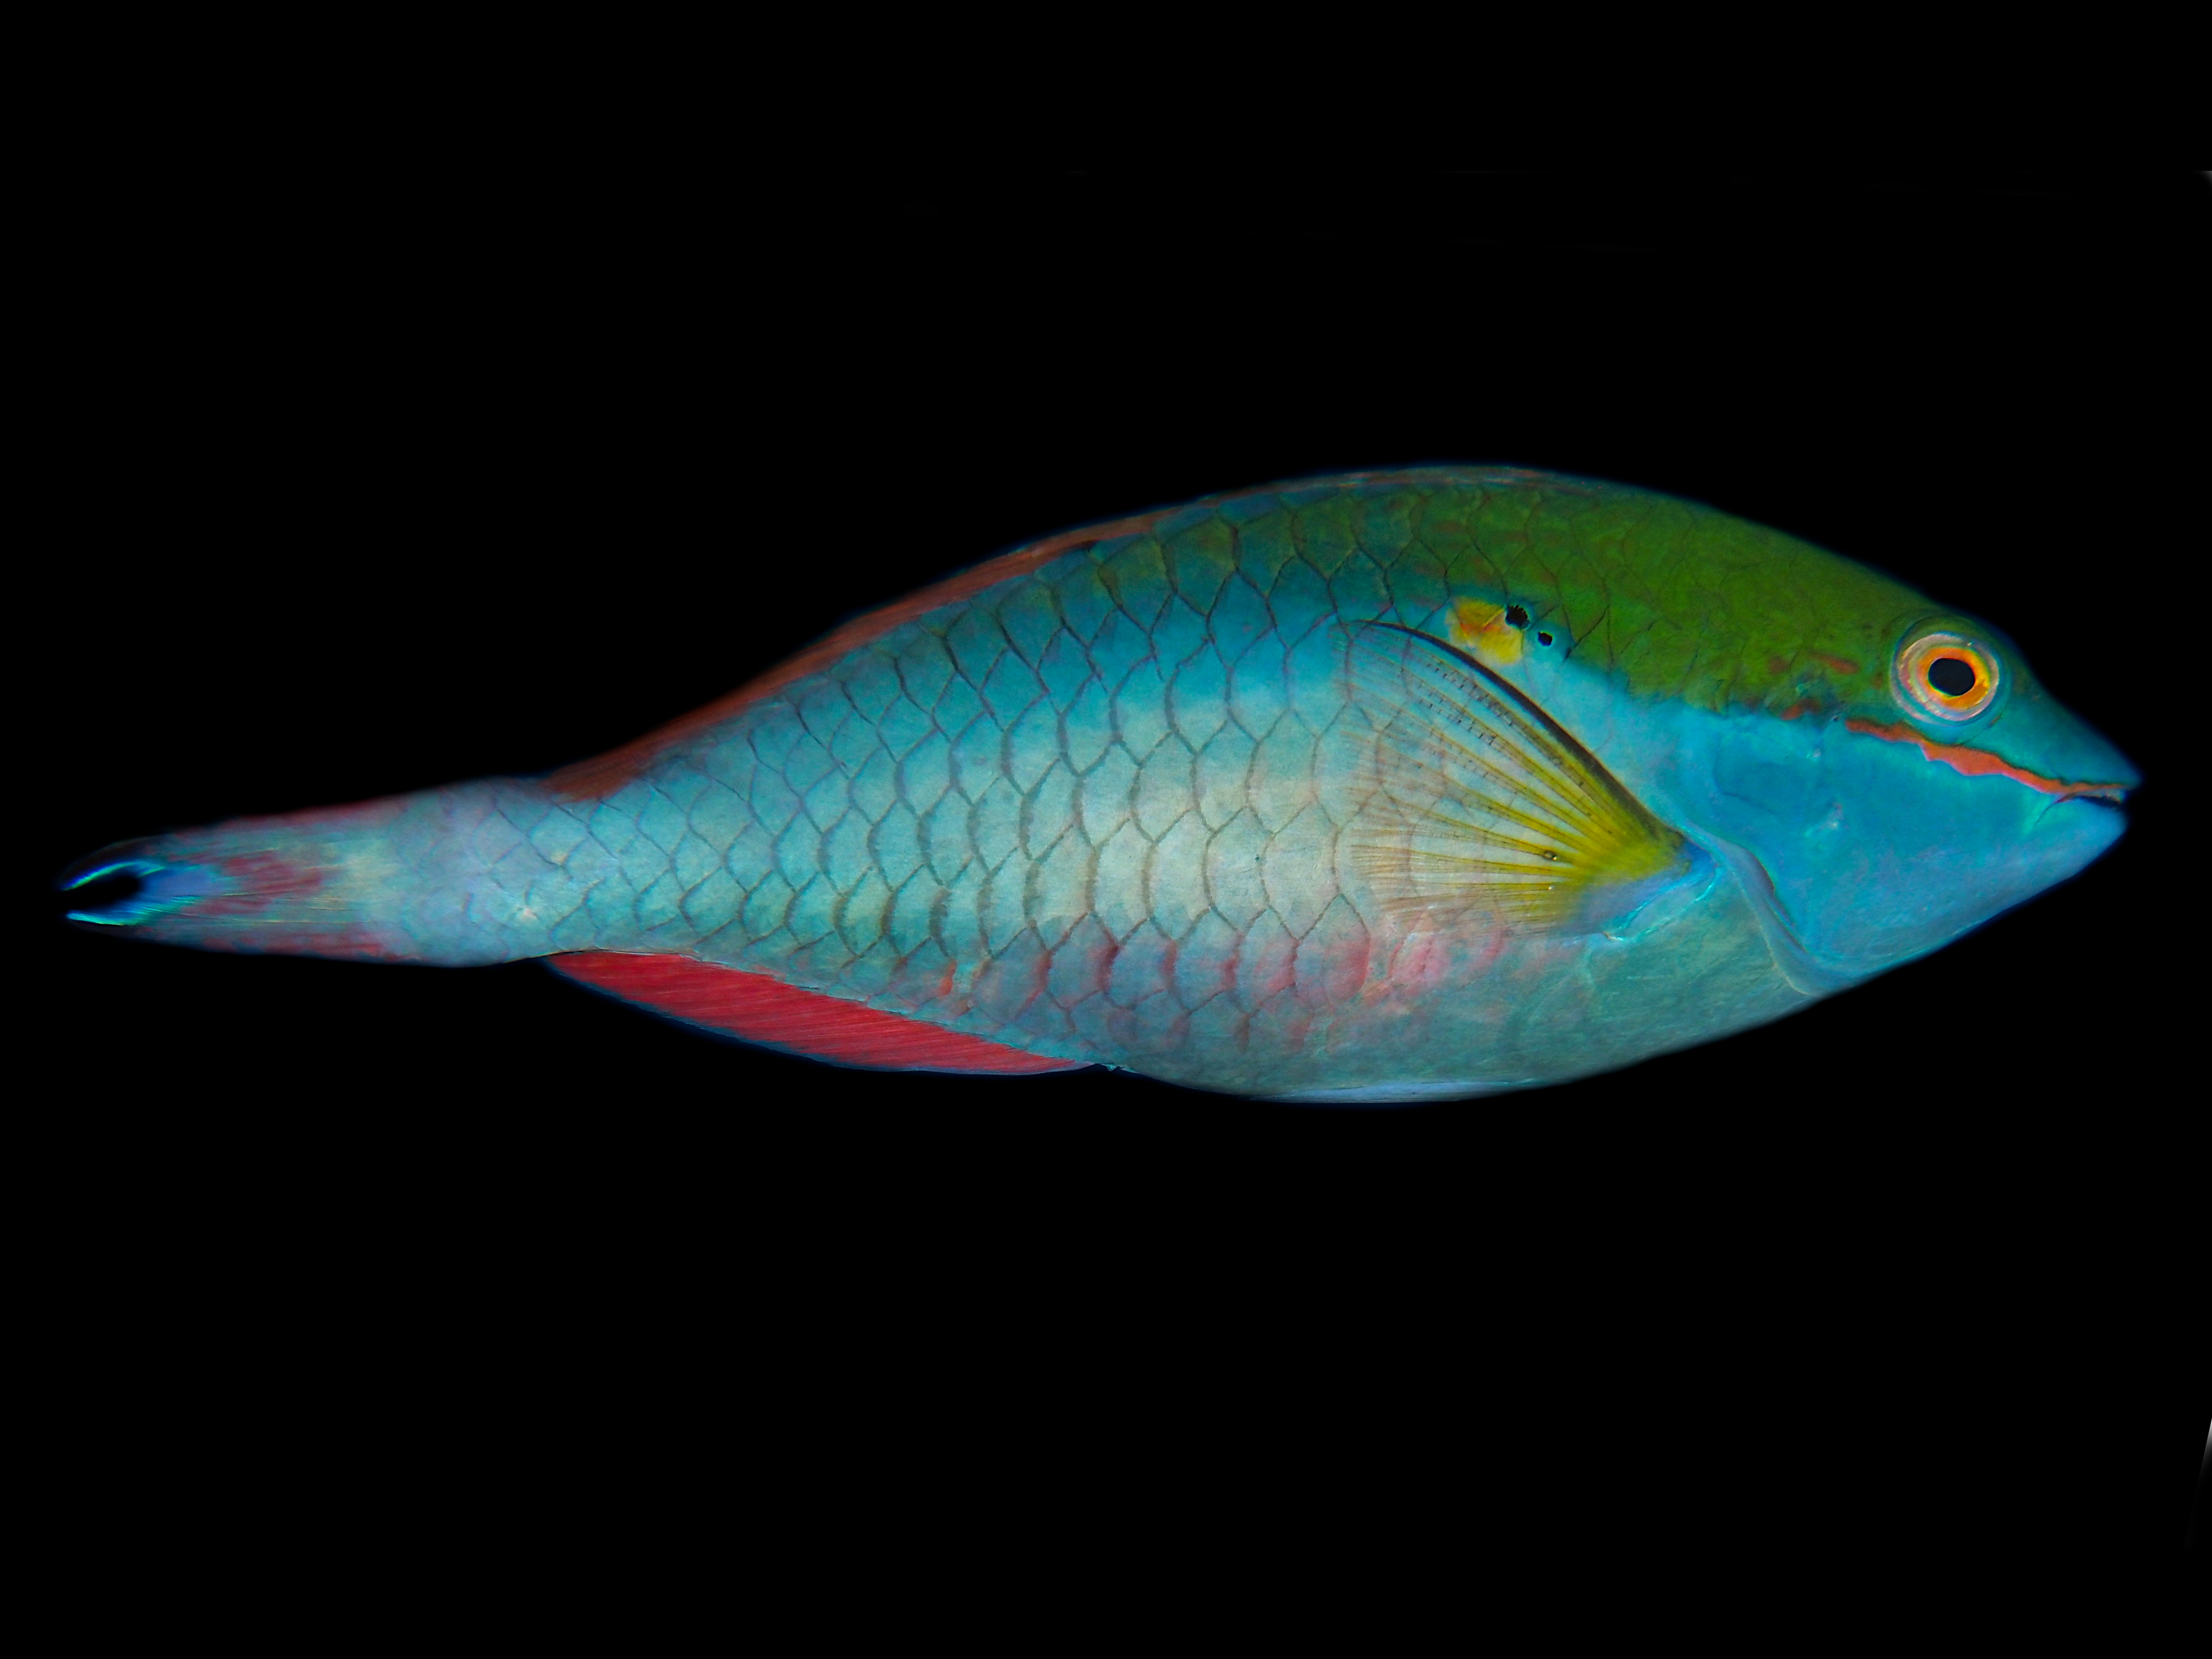 Redband Parrotfish - Sparisoma aurofrenatum